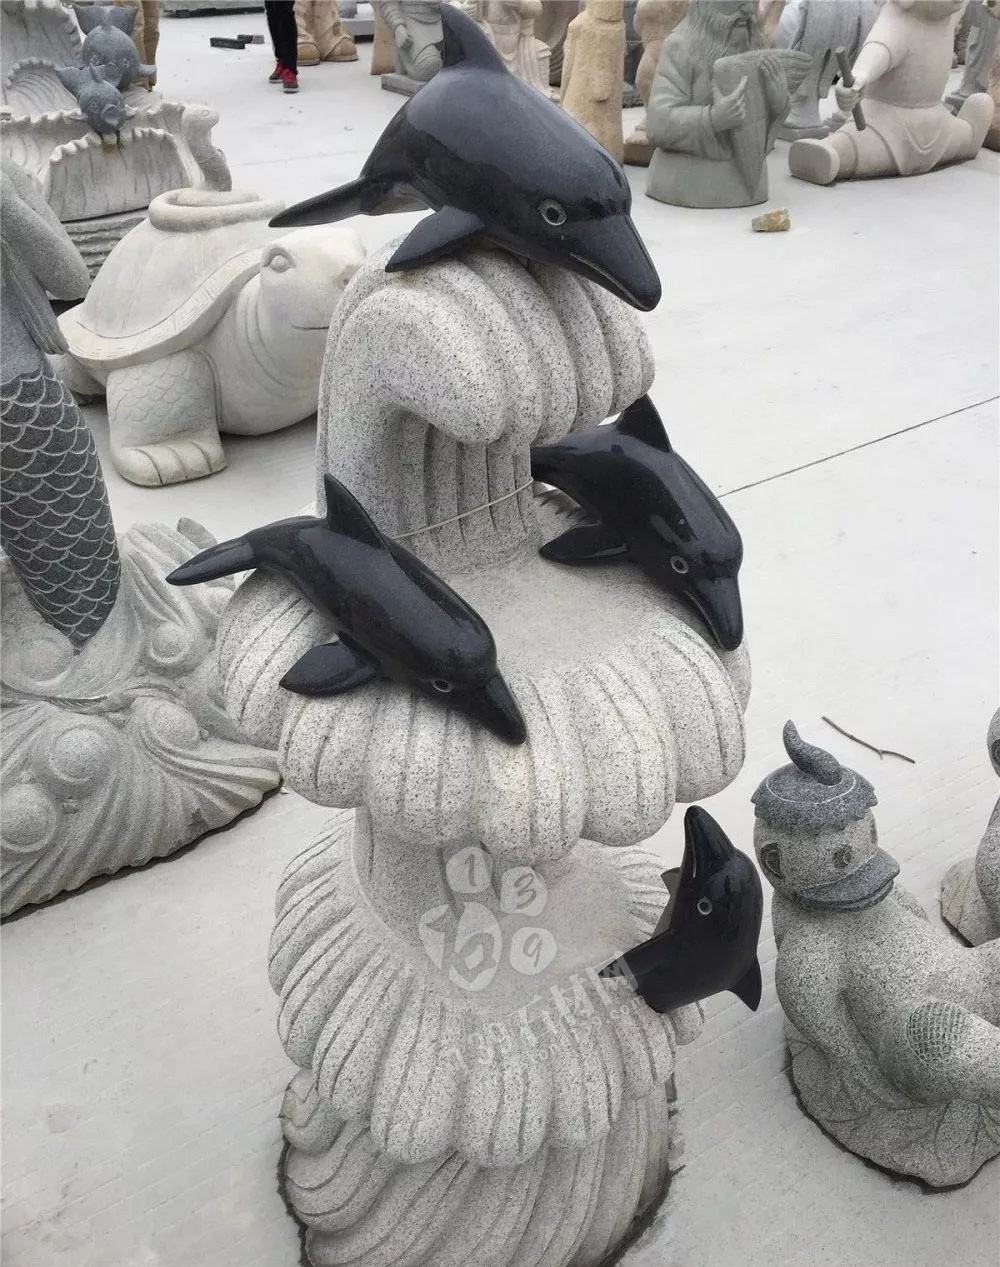 渔业石雕主题海洋生物馆 寓意生动形象 栩栩如生